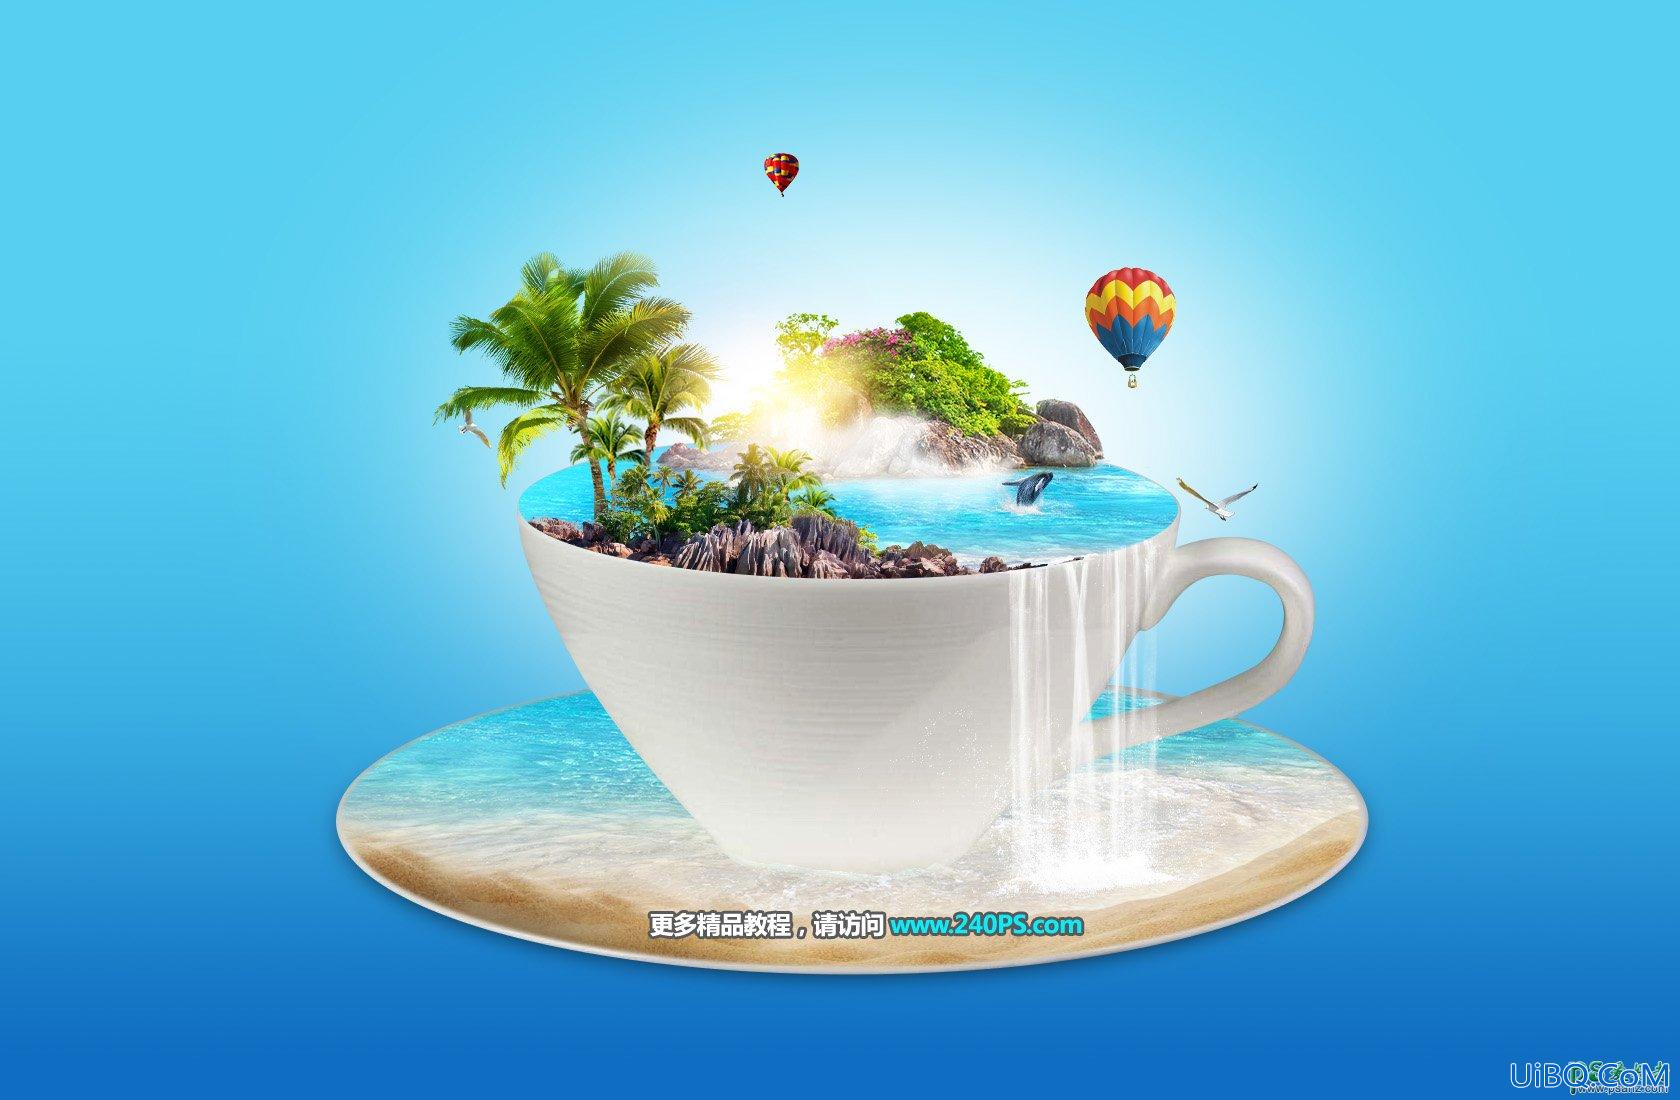 PS图片合成：创意合成茶水杯中的蓝色海洋和绿色小岛场景